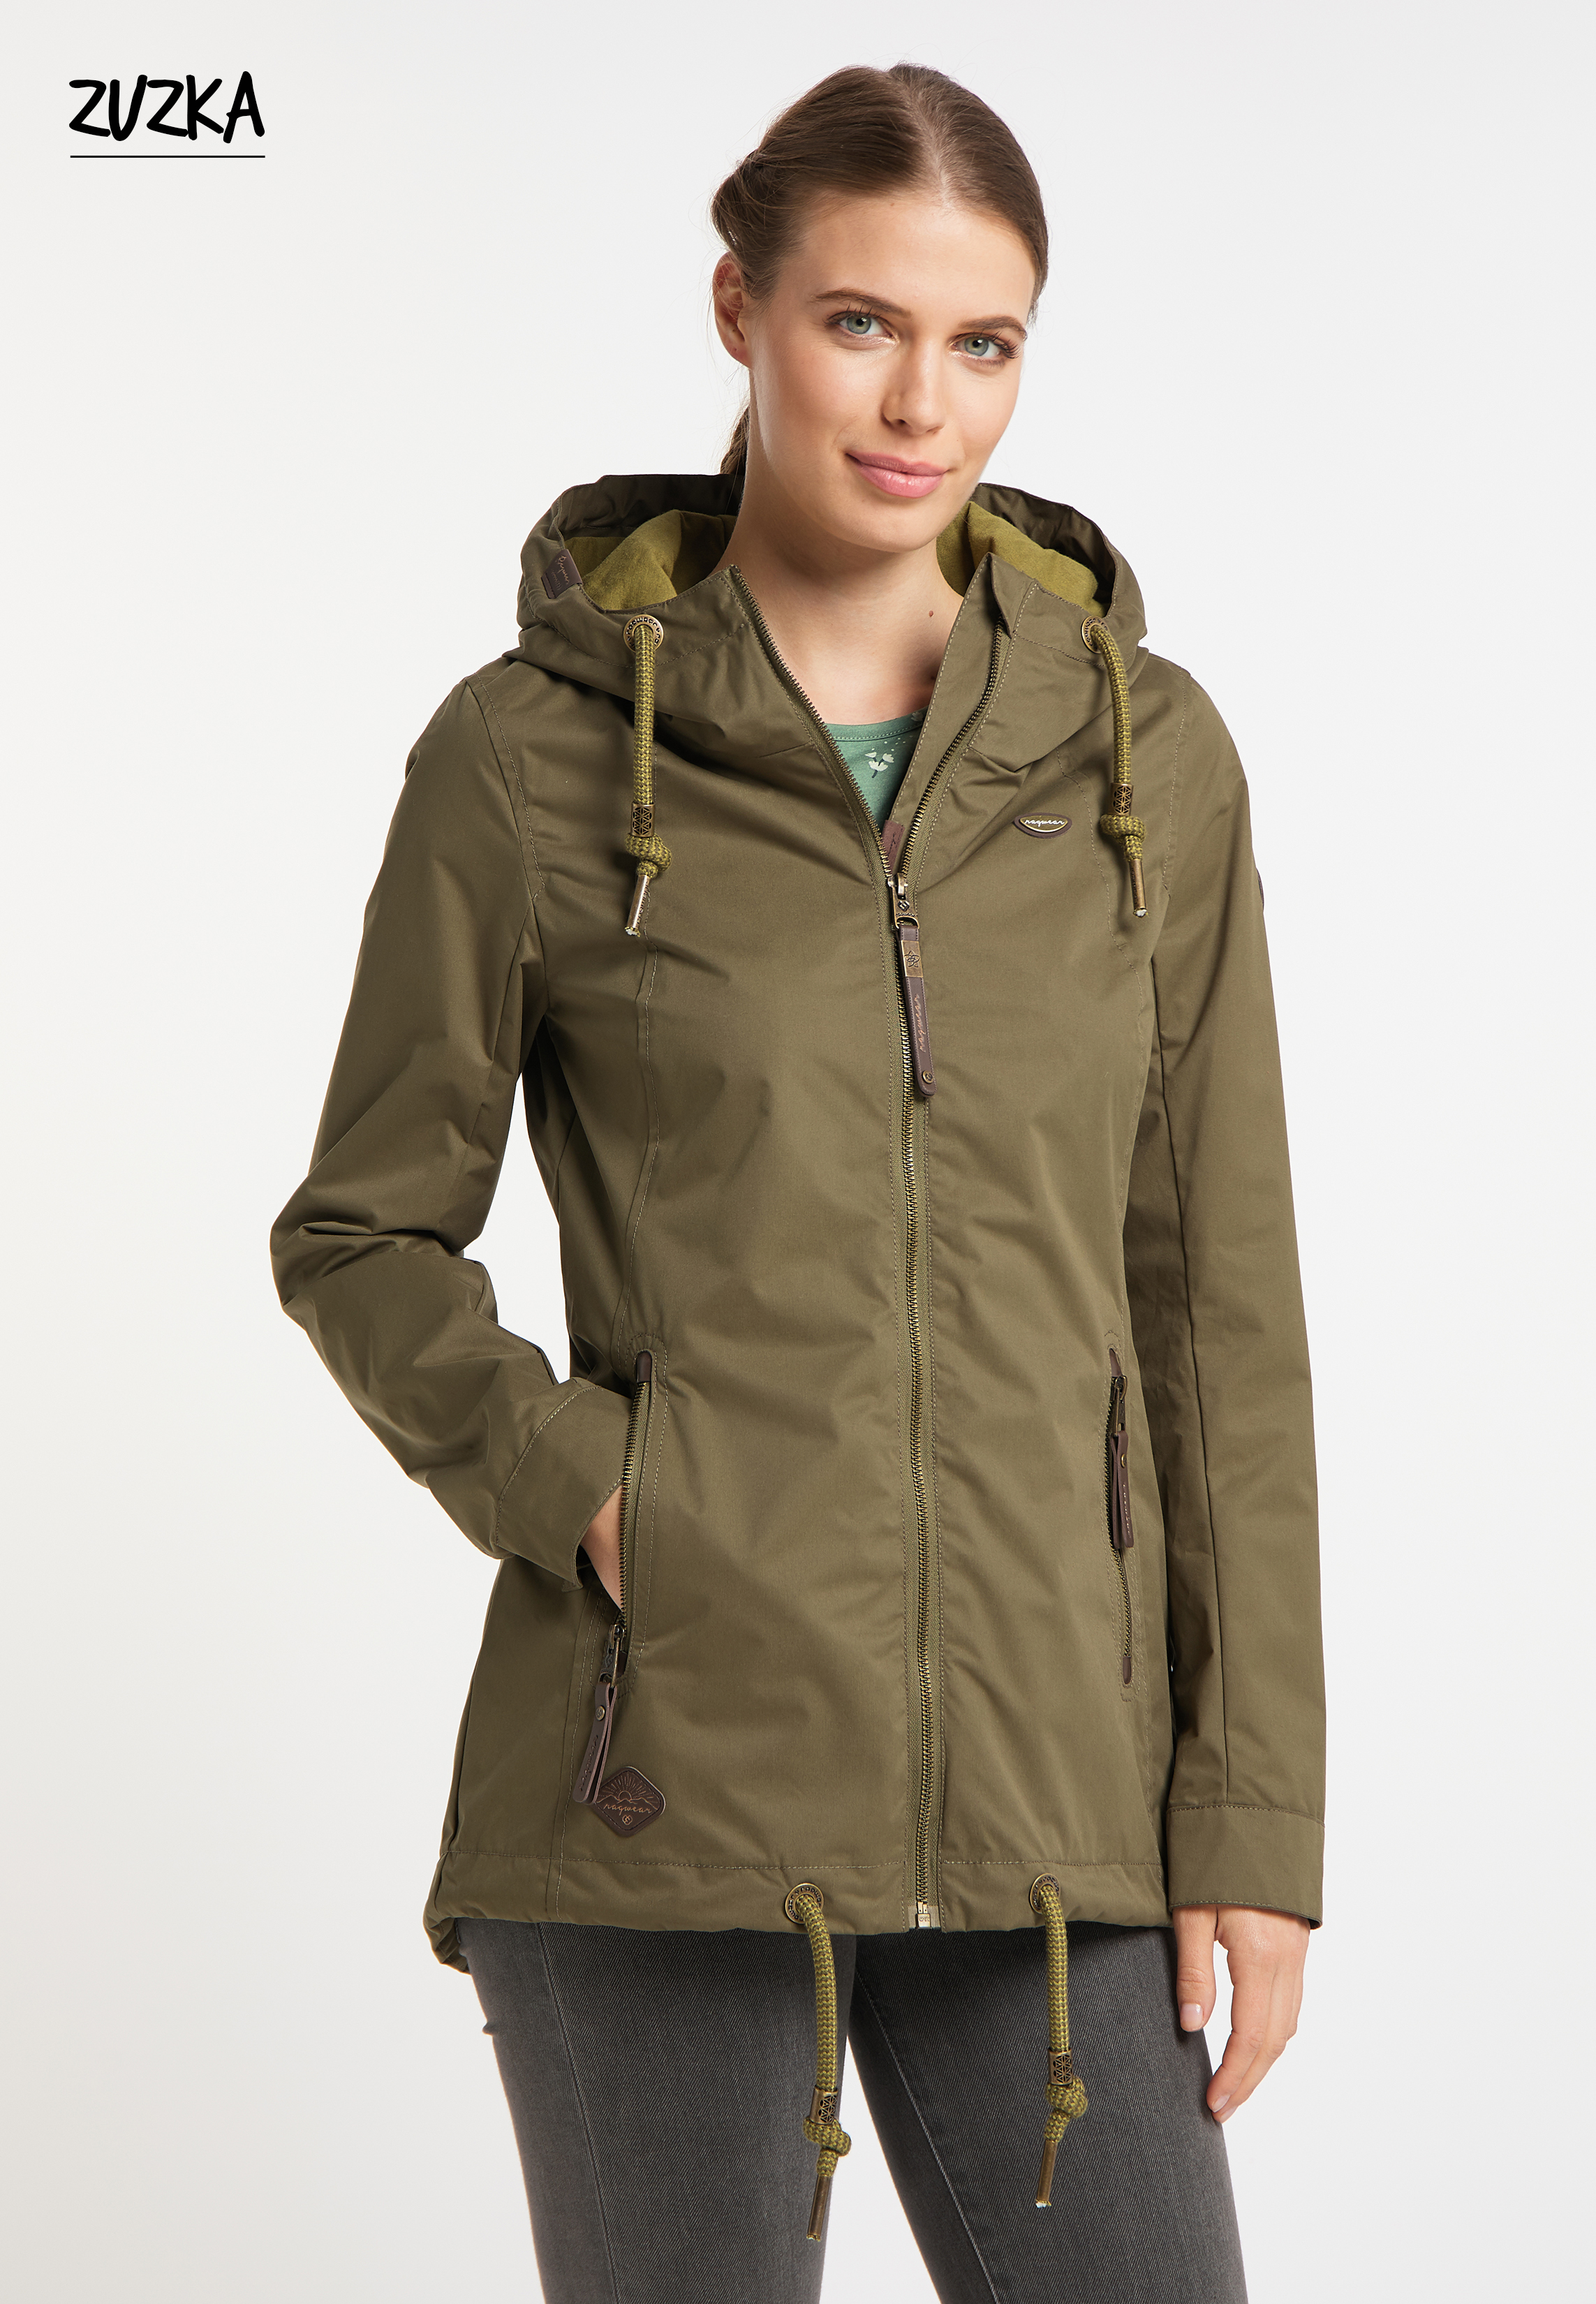 ragwear Dizzie women's functional jacket, wind- and water-repellent vegan  outdoor jacket 2221-60006 5010 olive green